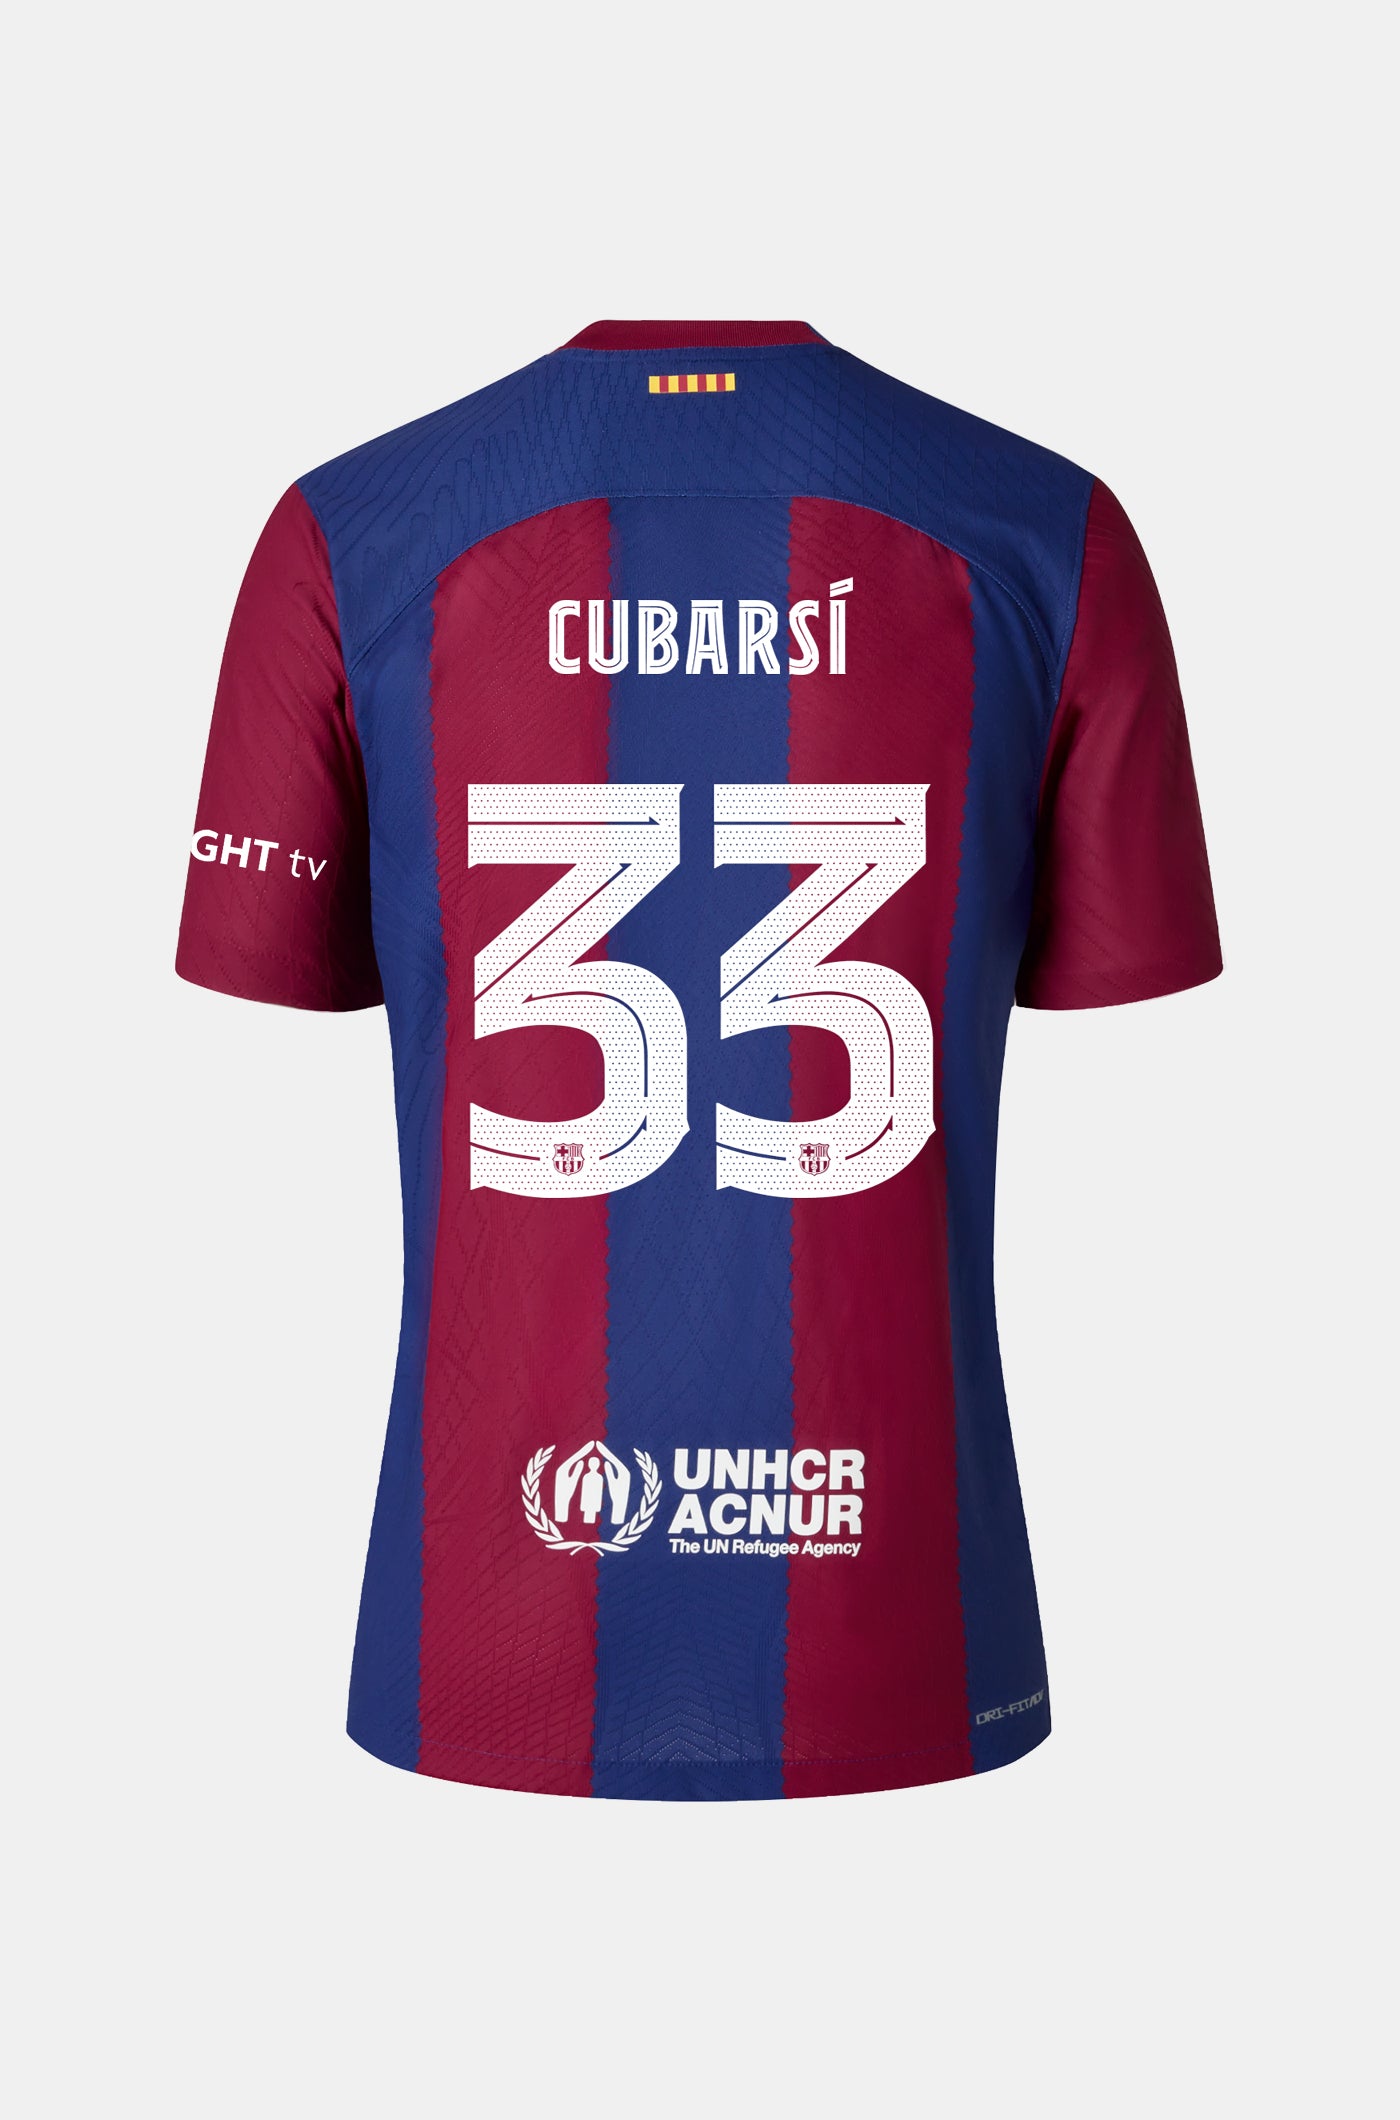 FC Barcelona home shirt 23/24 - Long-sleeve Player's Edition - CUBARSÍ